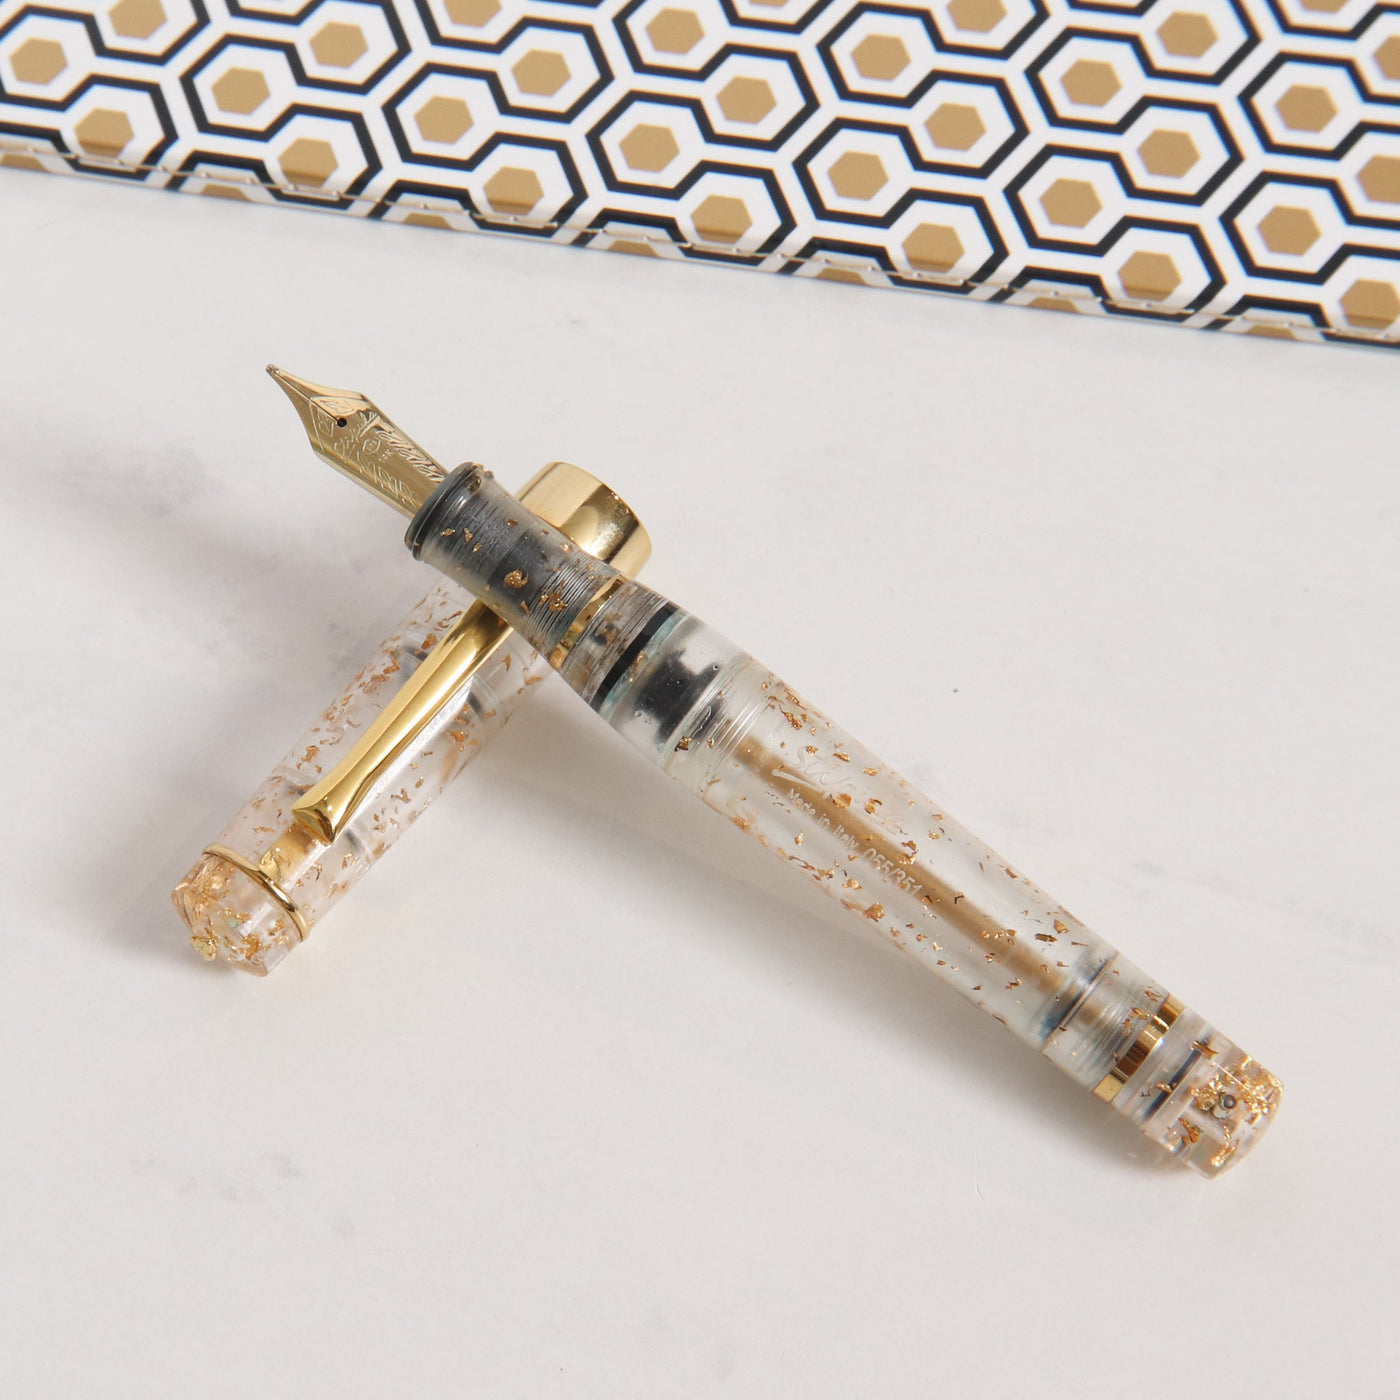 Stipula Suprema Foglia D'Oro Limited Edition Fountain Pen